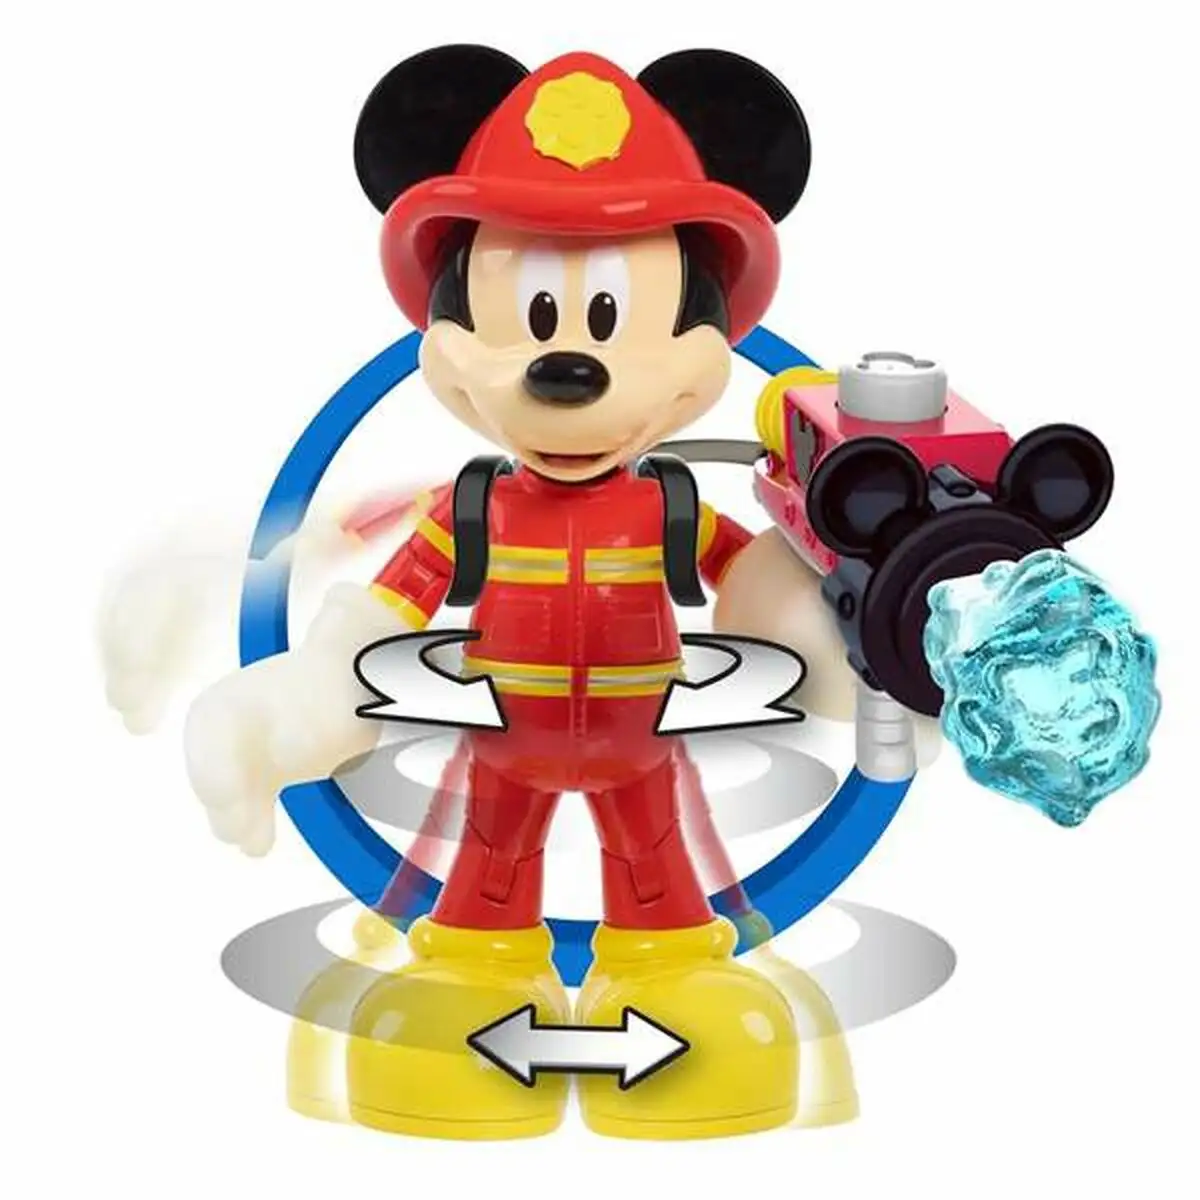 Figurine d action famosa mickey fireman 15 cm_8855. DIAYTAR SENEGAL - Votre Source de Trouvailles uniques. Naviguez à travers notre catalogue et trouvez des articles qui vous distinguent et reflètent votre unicité.